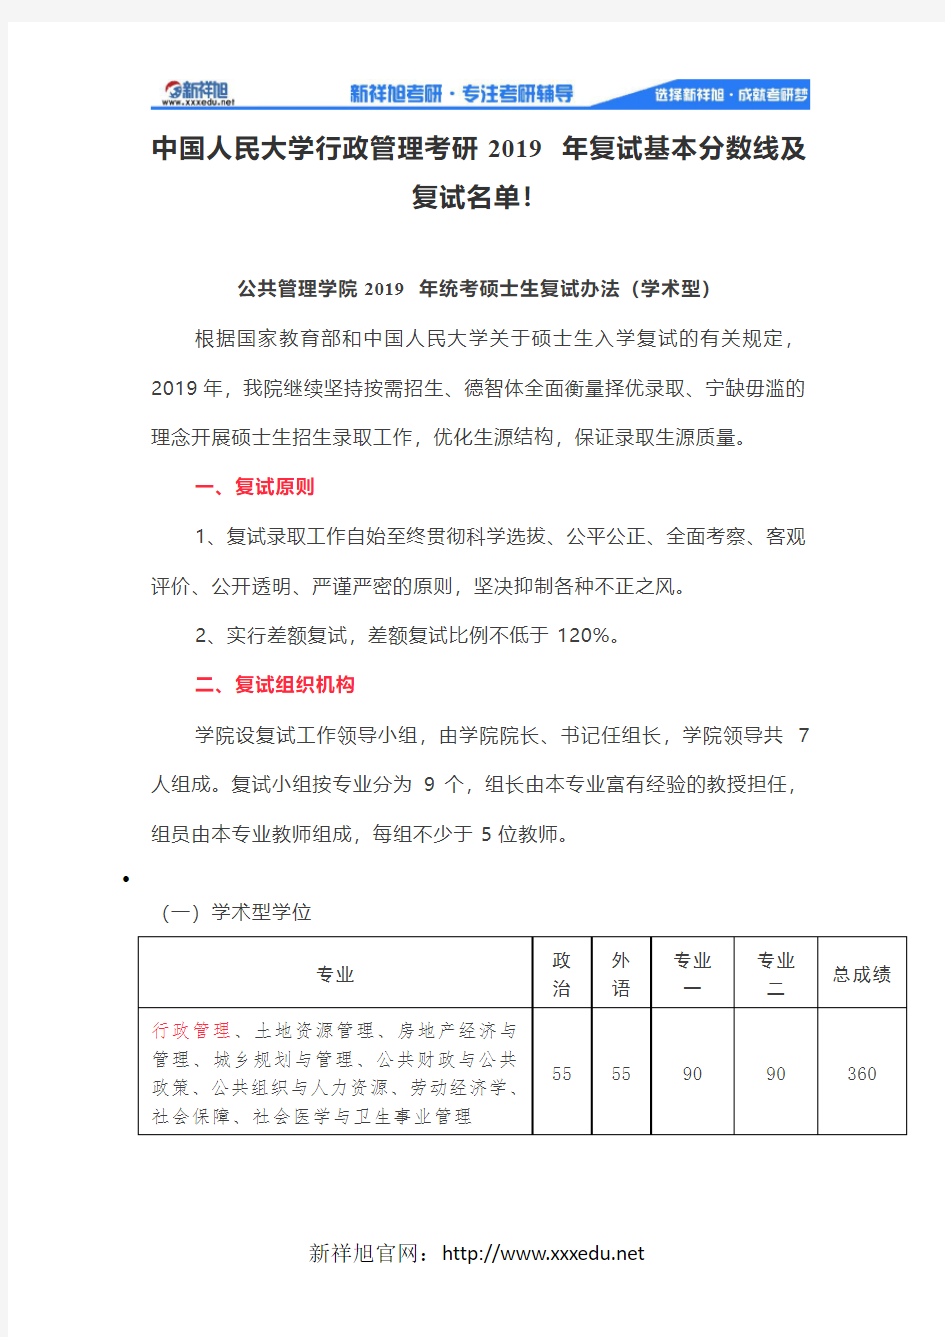 中国人民大学行政管理考研2019年复试基本分数线及复试名单!